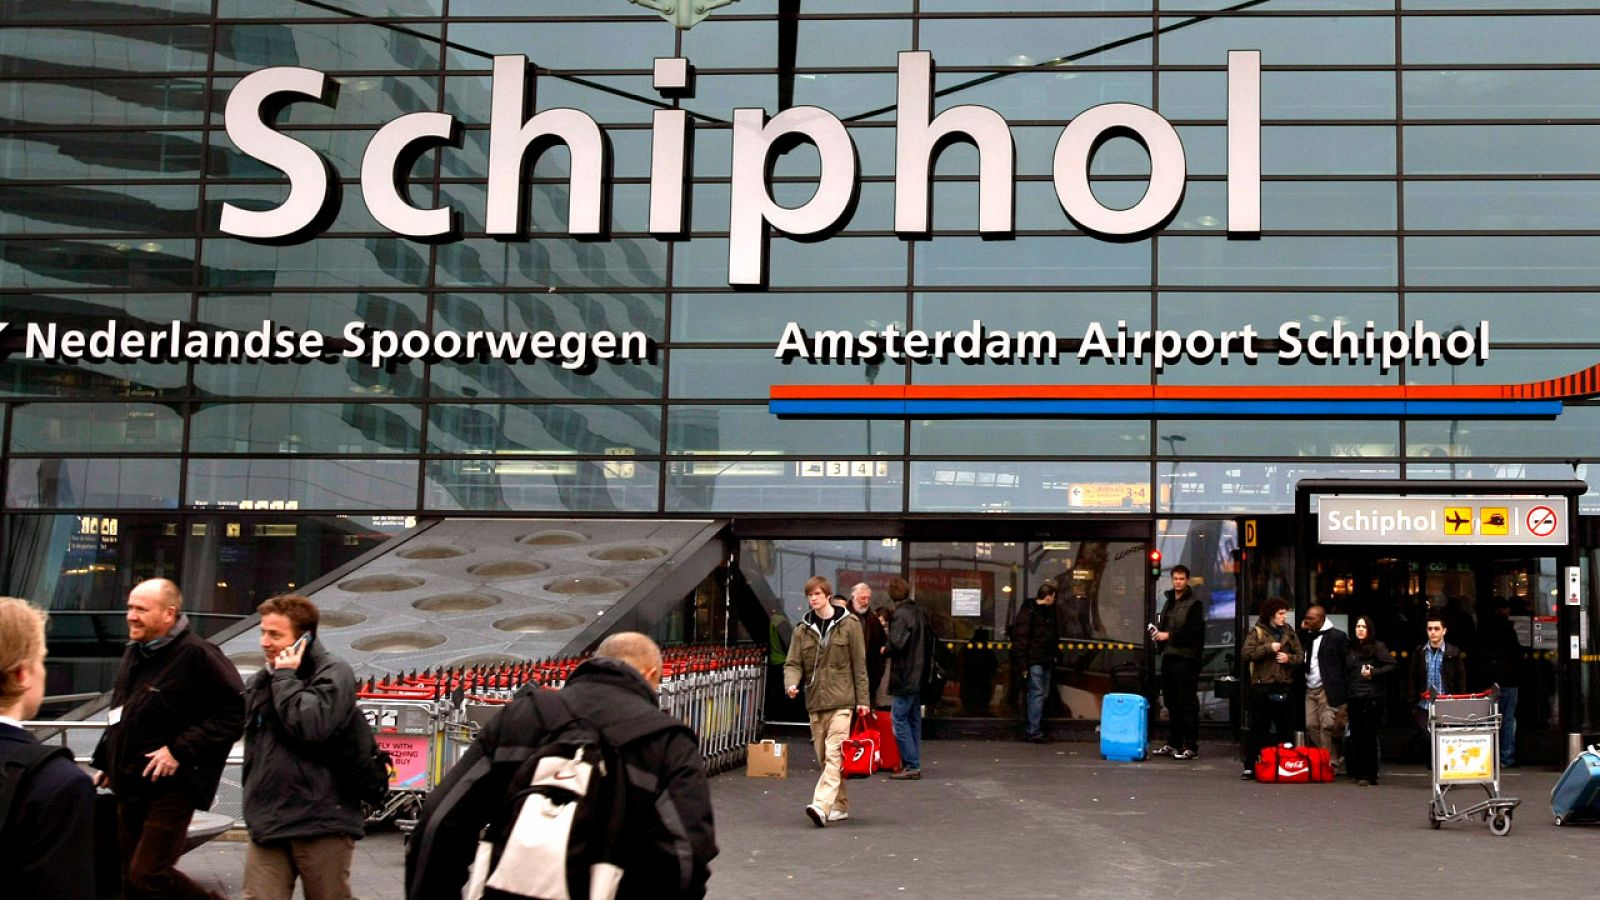 Una de las entradas al aeropuerto de Schiphol-Amsterdam